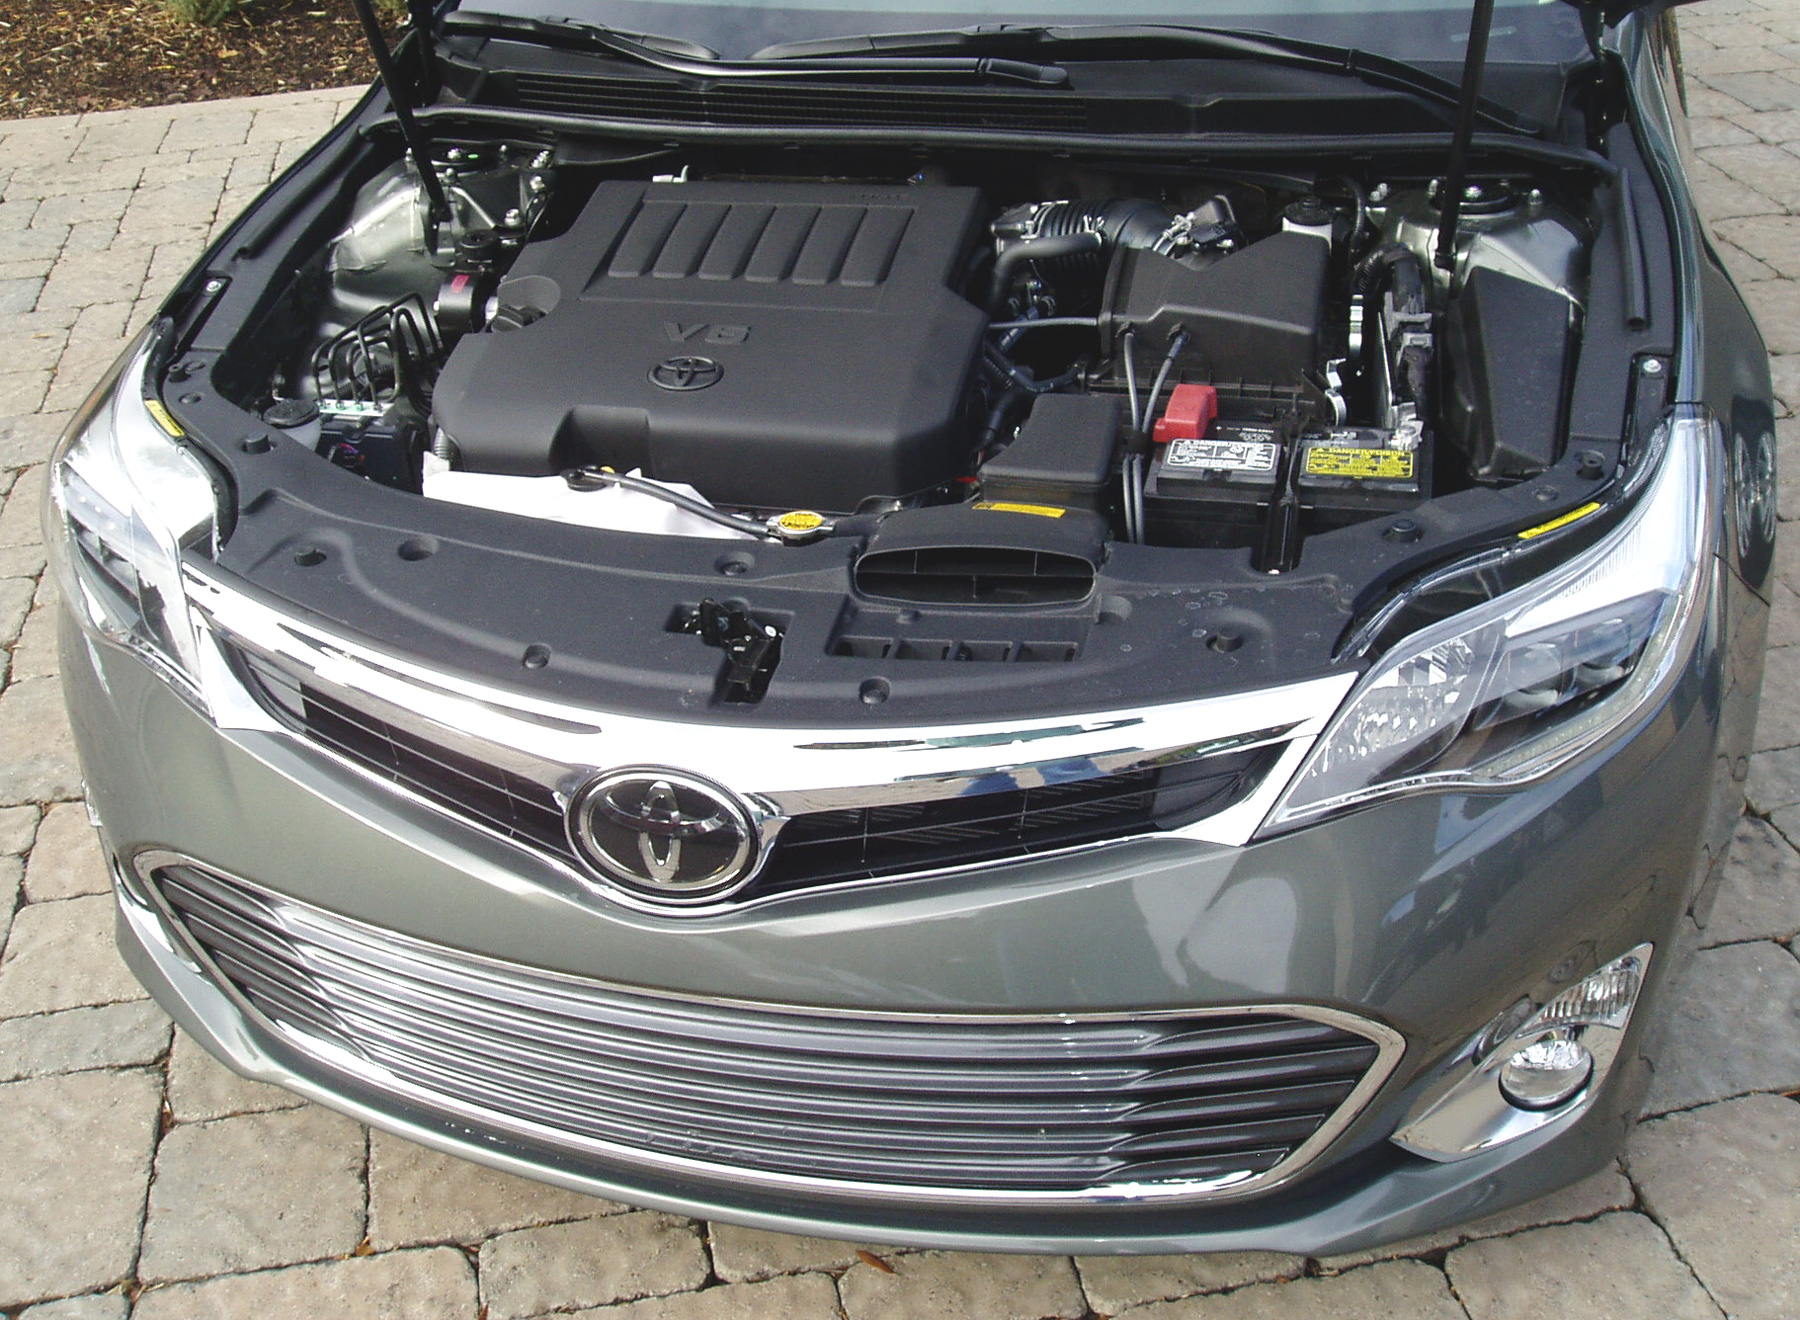 Test Drive: 2013 Toyota Avalon & Avalon Hybrid | Our Auto Expert